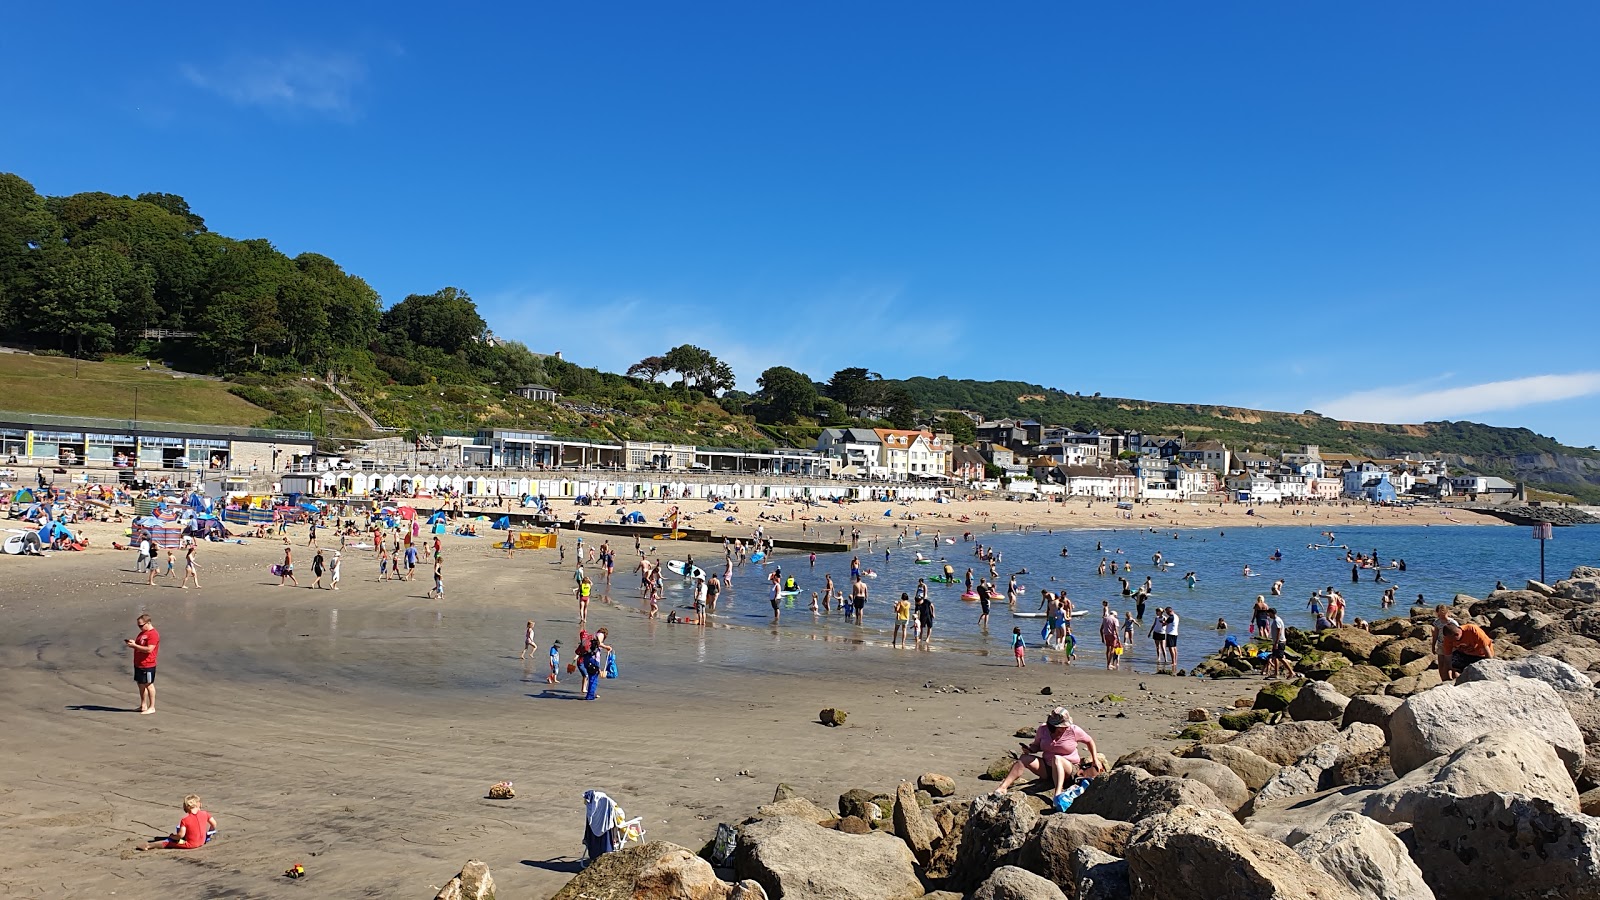 Fotografie cu Lyme regis beach - locul popular printre cunoscătorii de relaxare